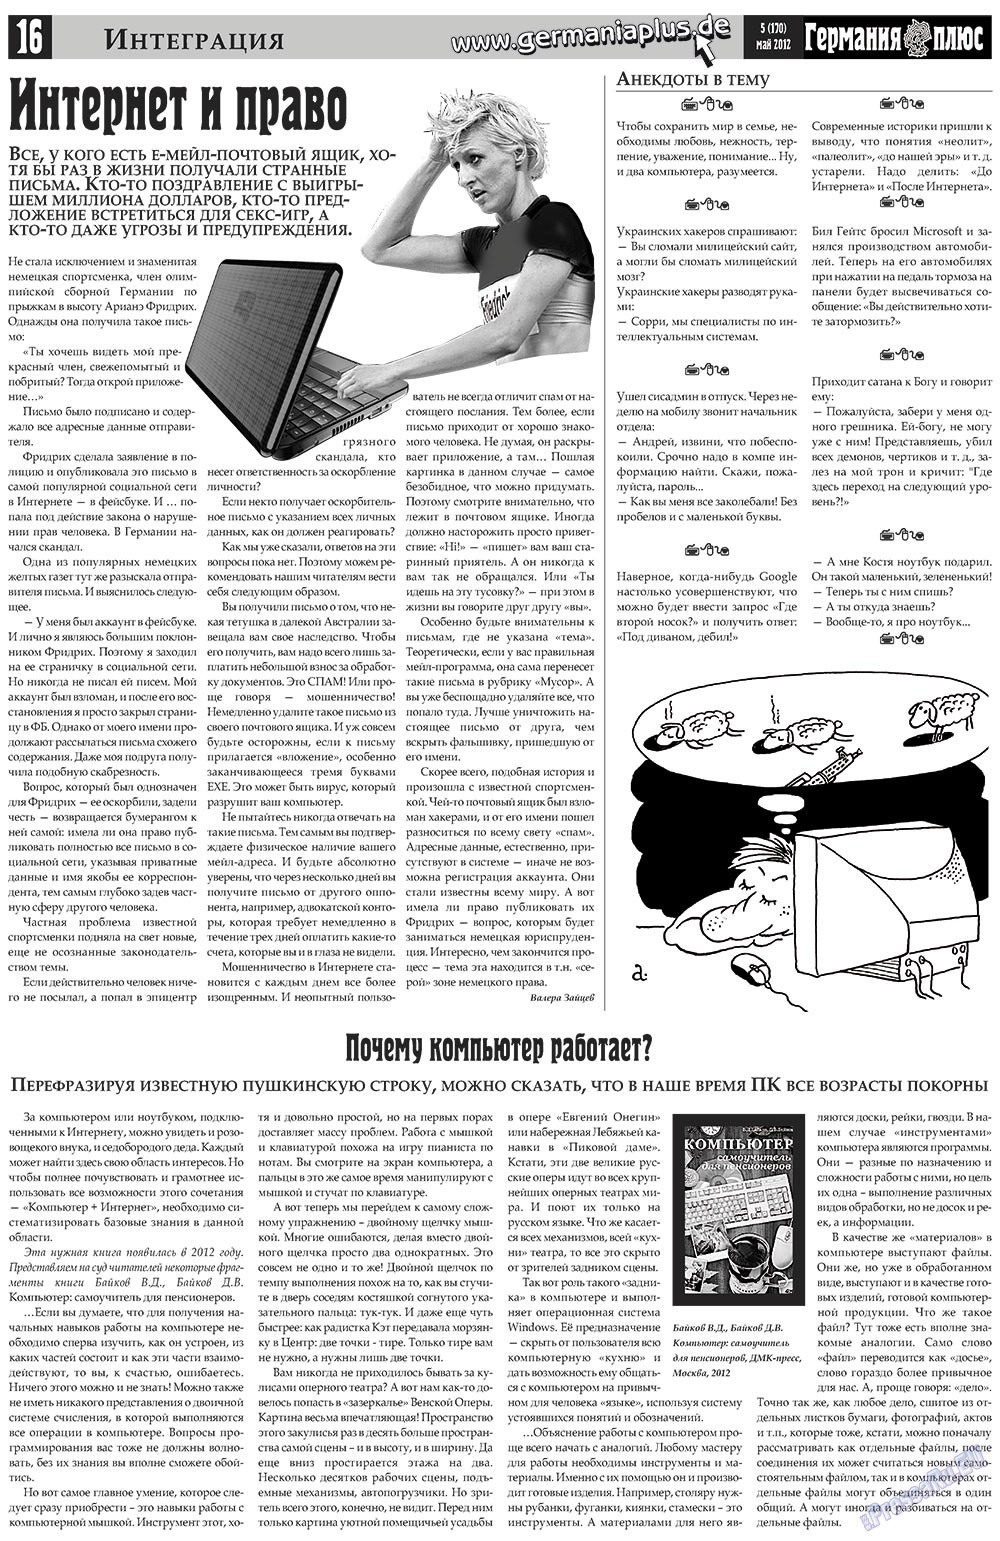 Германия плюс, газета. 2012 №5 стр.16